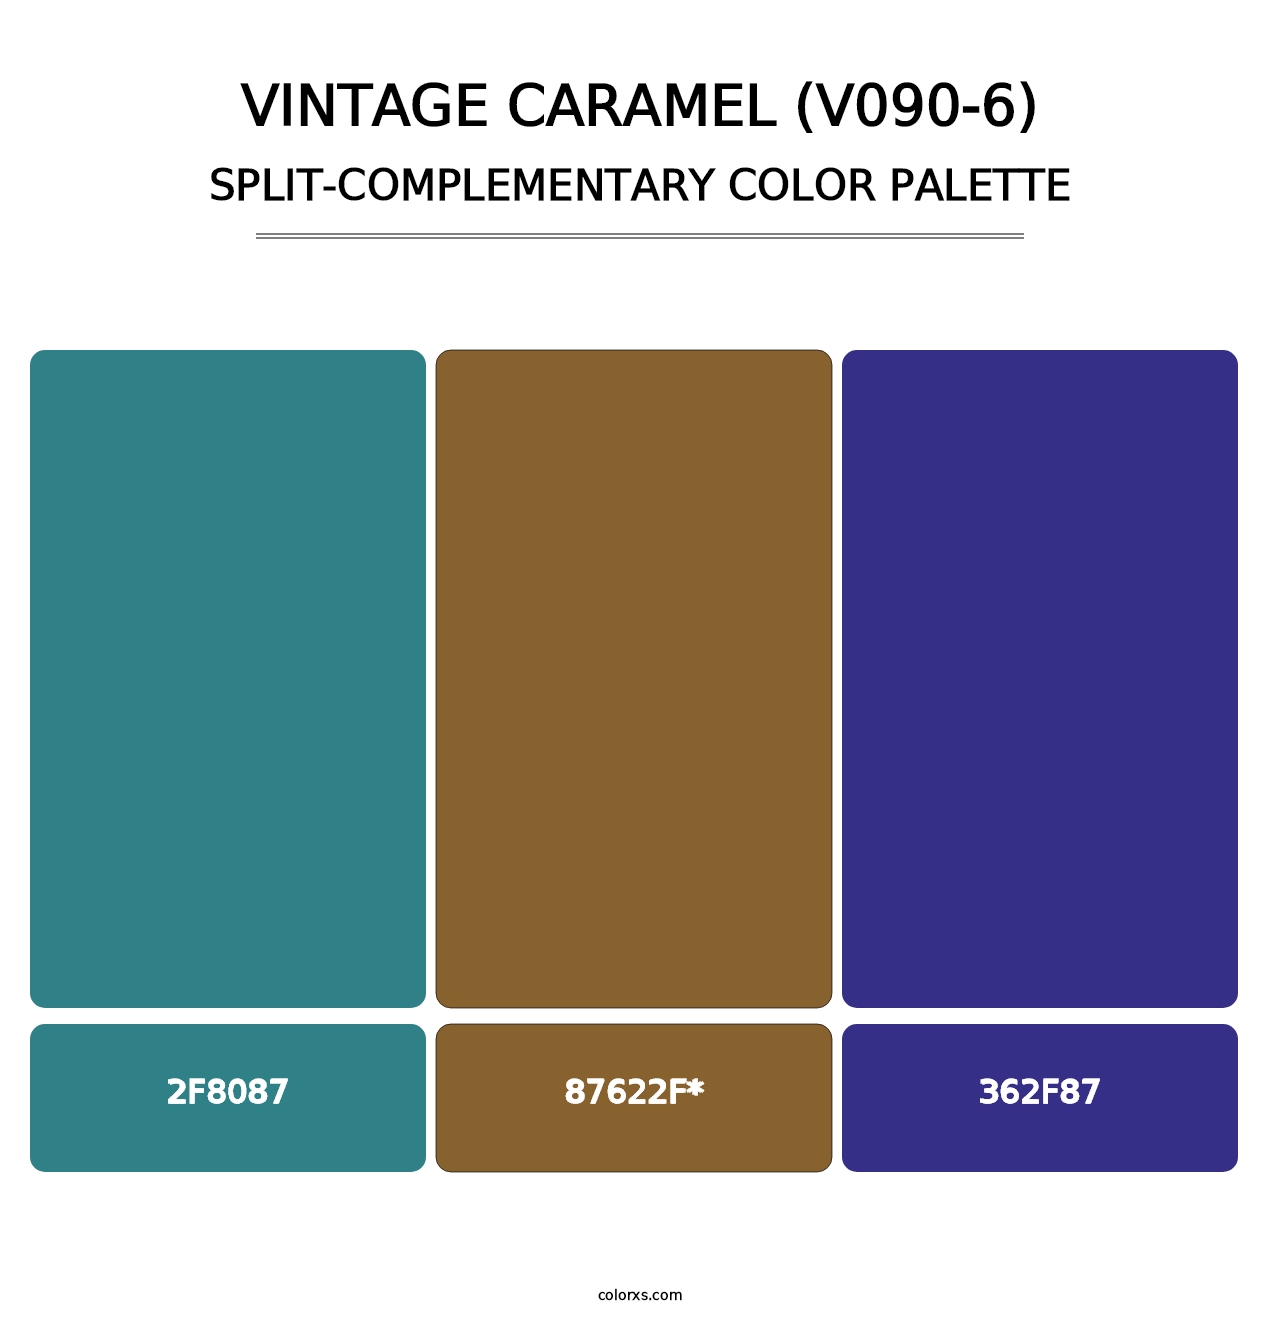 Vintage Caramel (V090-6) - Split-Complementary Color Palette